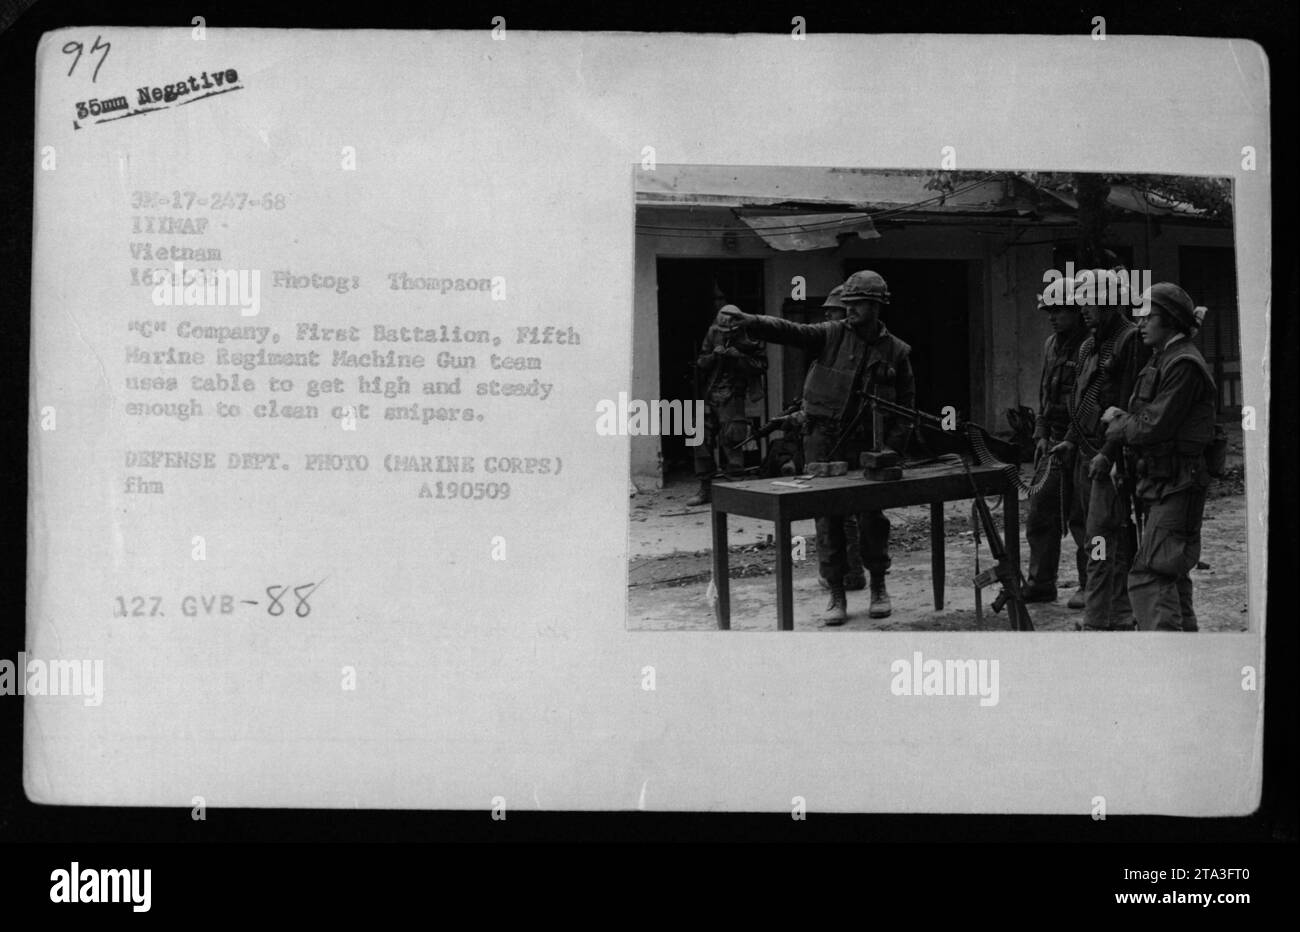 Marines der C-Kompanie, First Battalion, Fifth Marine Regiment nutzen einen Tisch, um sich zu erheben und eine stabile Position zu halten, während sie während des Kampfes in Vietnam am 16. Februar 1968 feindliche Scharfschützen angreifen. Dieses Foto wurde von Photogs Thompson aufgenommen und ist ein offizielles Foto des Verteidigungsministeriums. Stockfoto